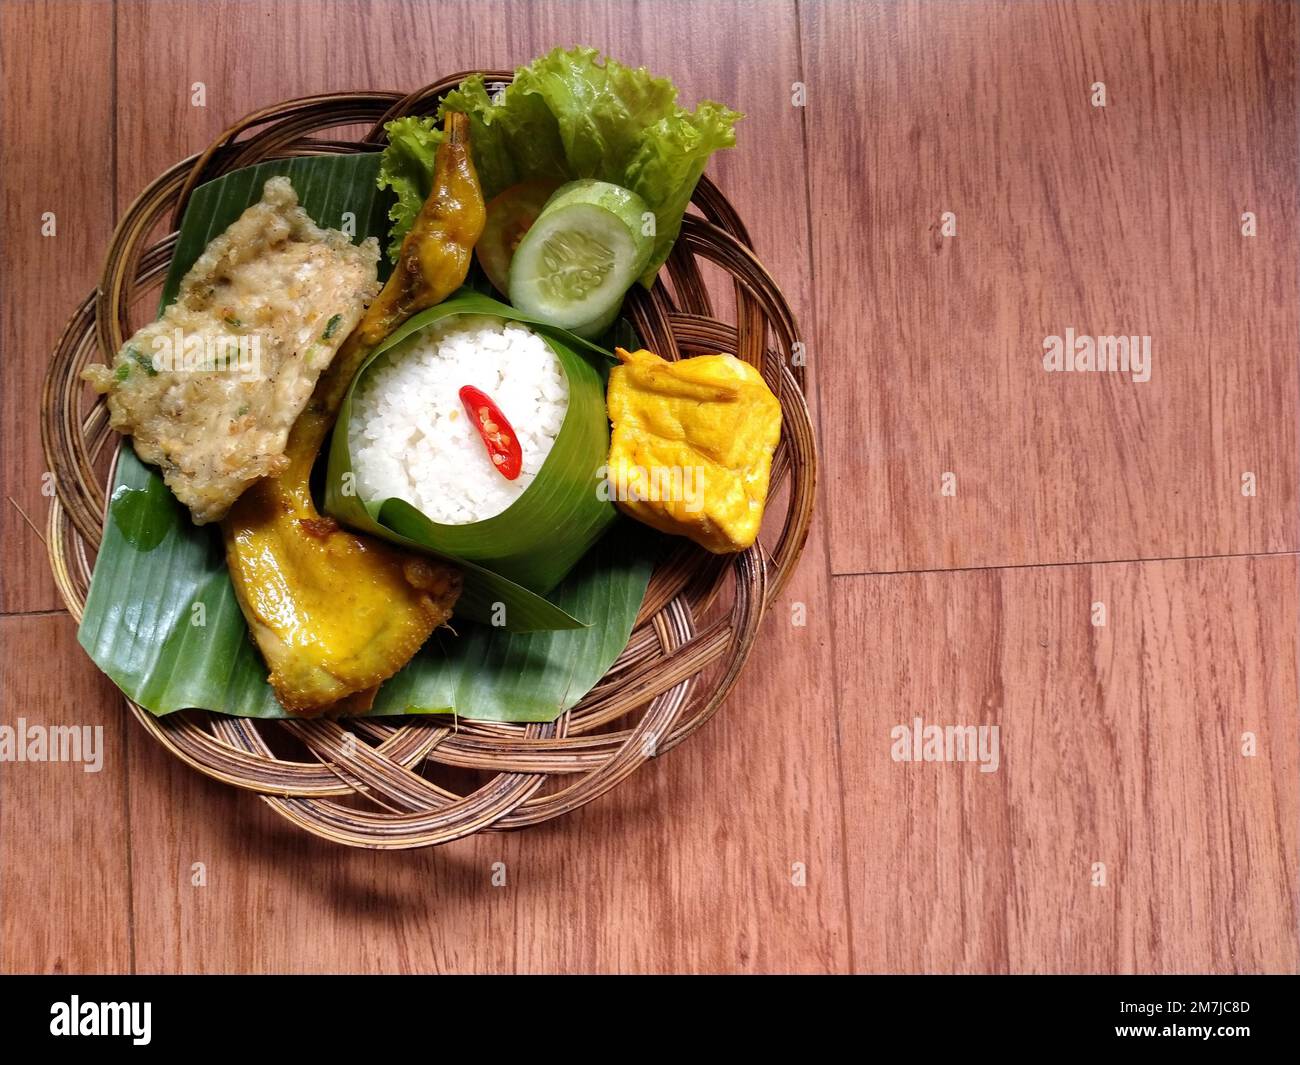 Köstliche indonesische Mahlzeit Nasi liwet von sudanesischem West-Java. Komplettes Set mit gebratenem Tofu, Mendoan-Tempeh, gebratenem Hähnchen und frischem Gemüse. Stockfoto